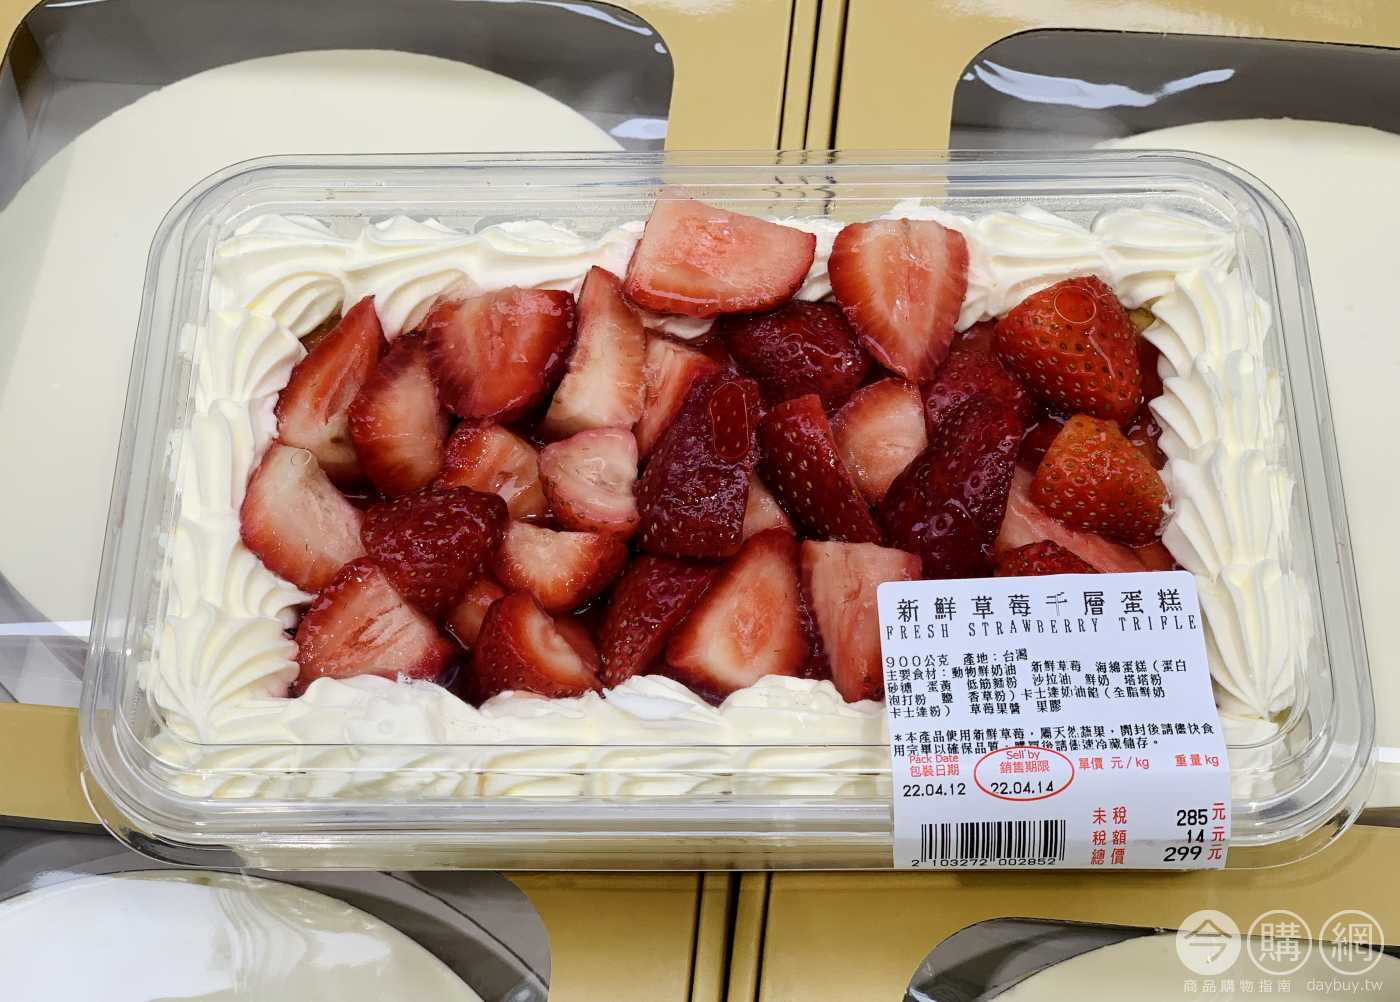 [情報] 基隆連珍 買草莓蛋糕送芋泥球